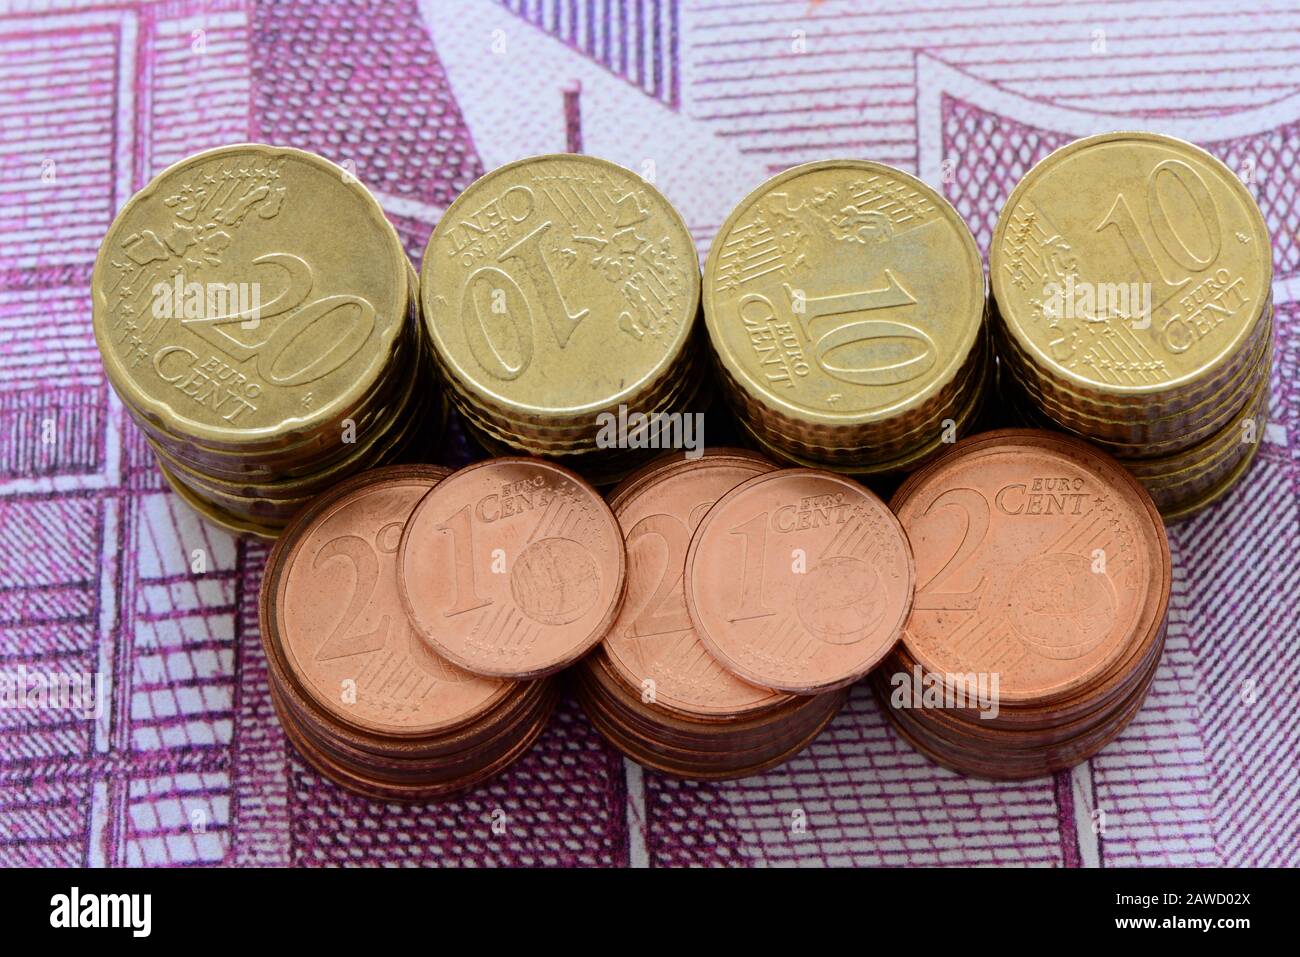 Medienberichten zufolge plant die neue EU-Kommission, alle 1- und 2-Cent-Münzen abzuschaffen. Stockfoto